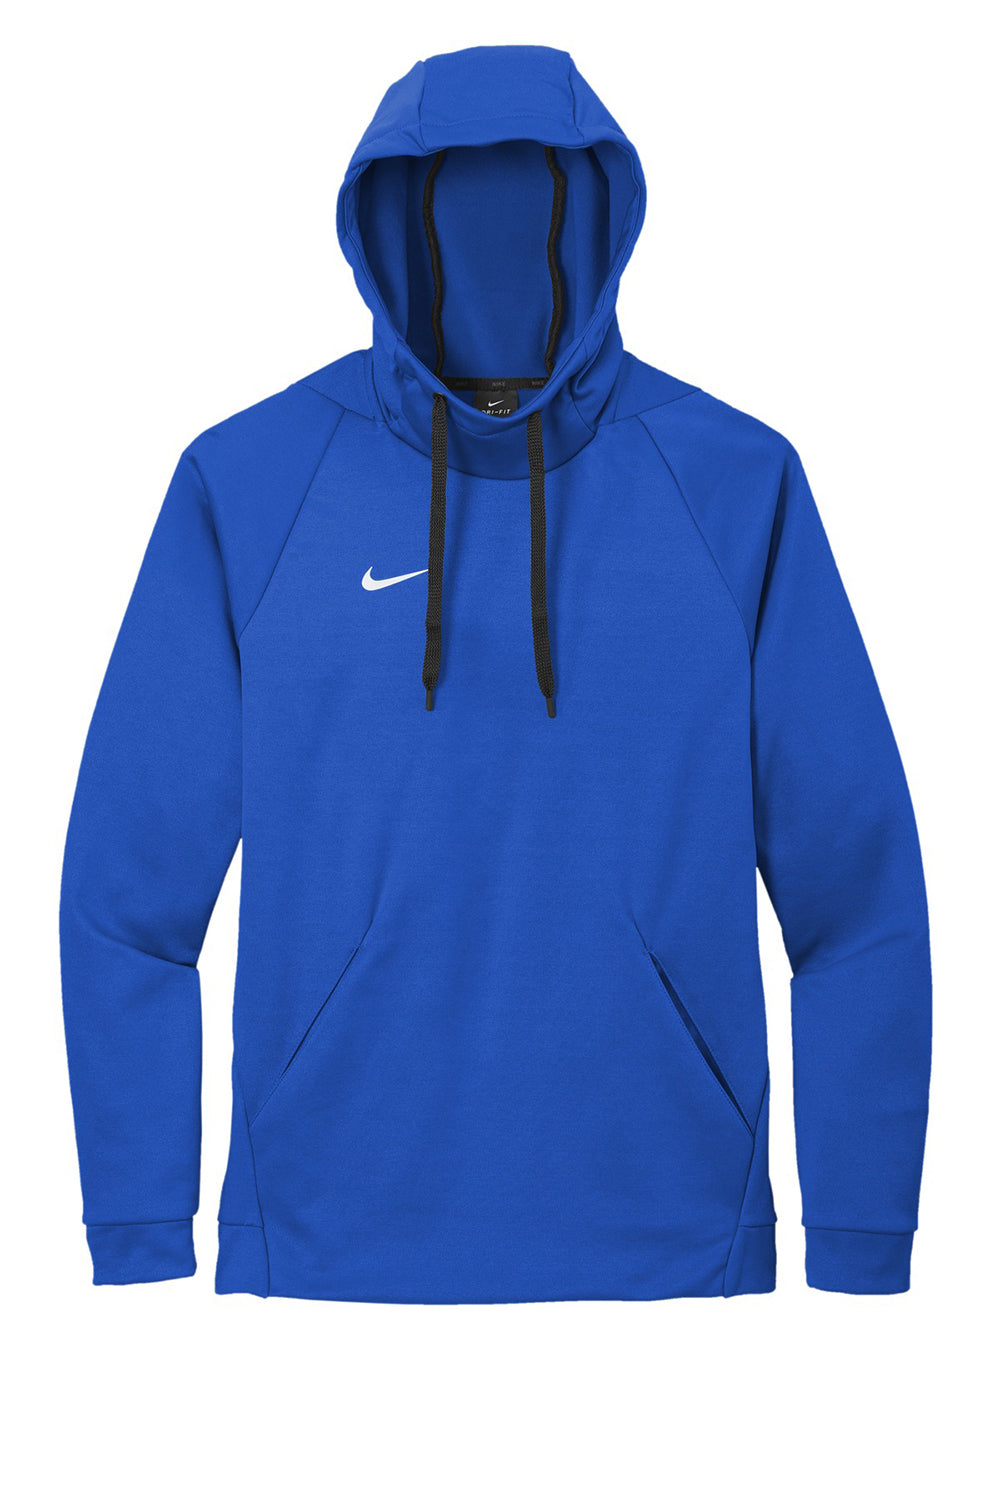 Nike CN9473 Mens Therma-Fit Moisture Wicking Fleece Hooded Sweatshirt Hoodie Team Royal Blue Flat Front